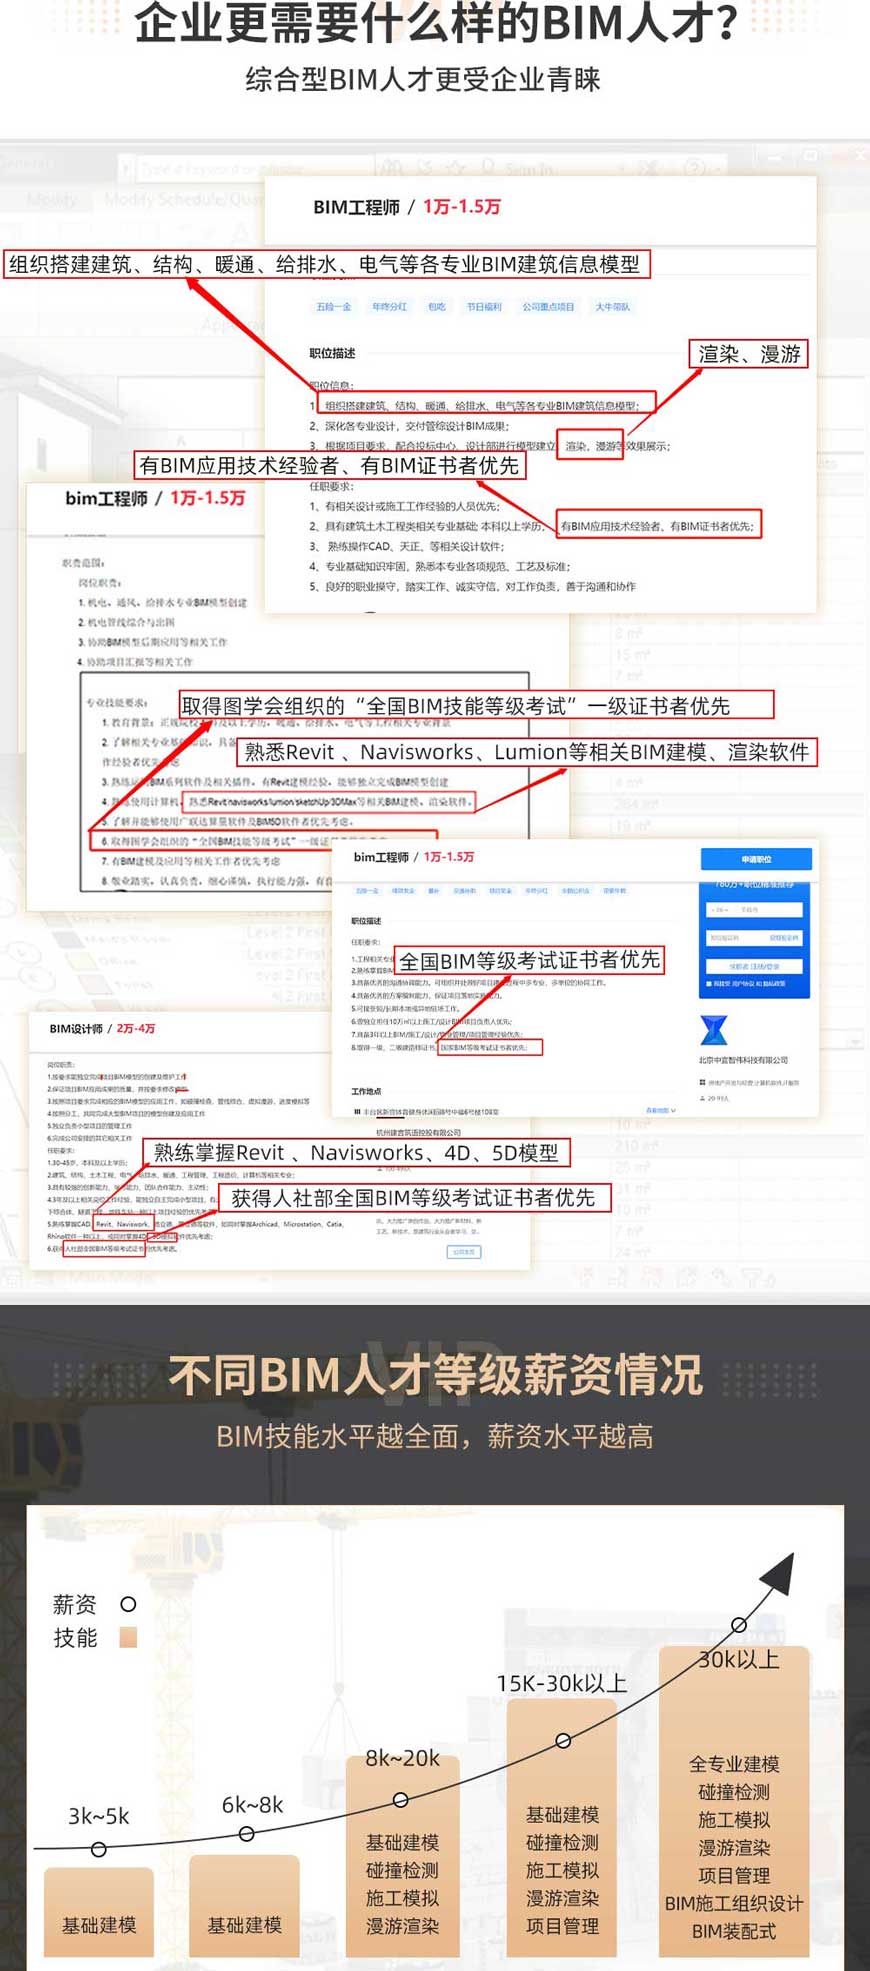 广州BIM培训班,广州BIM培训就到广州小筑教育